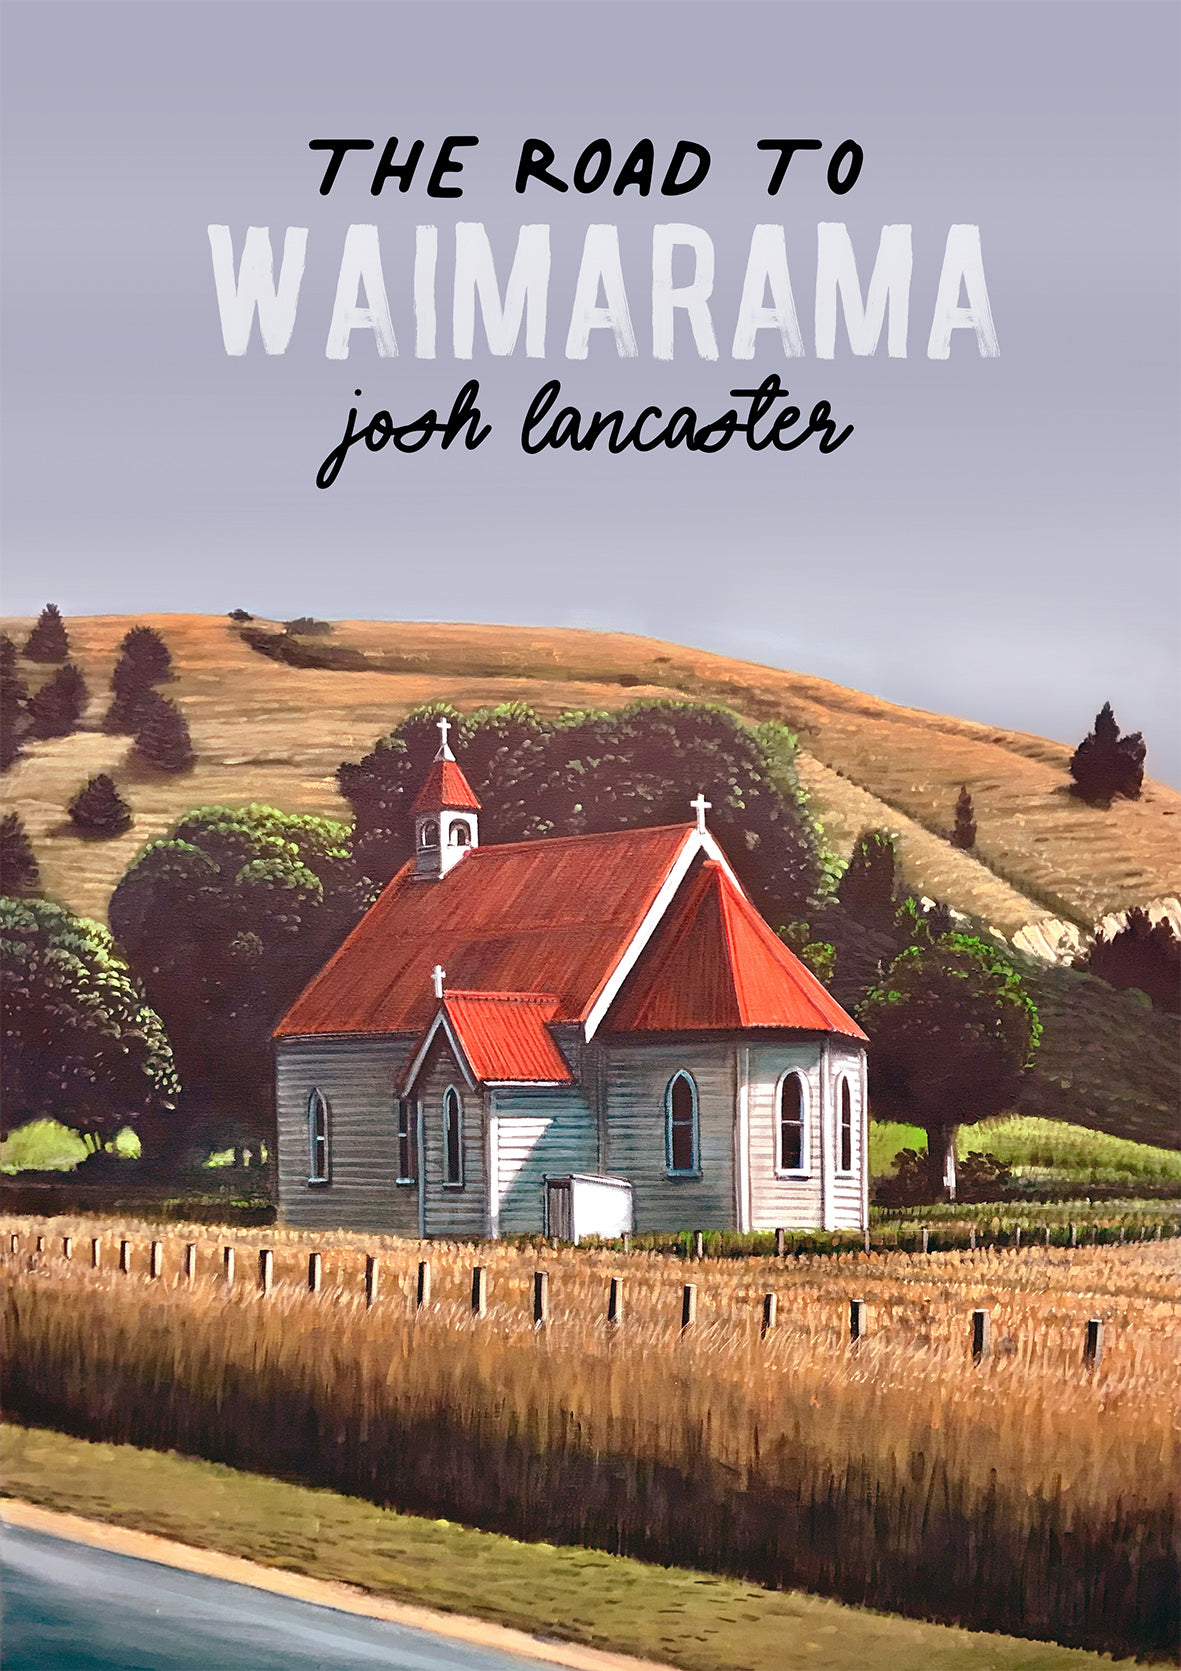 THE ROAD TO WAIMARAMA